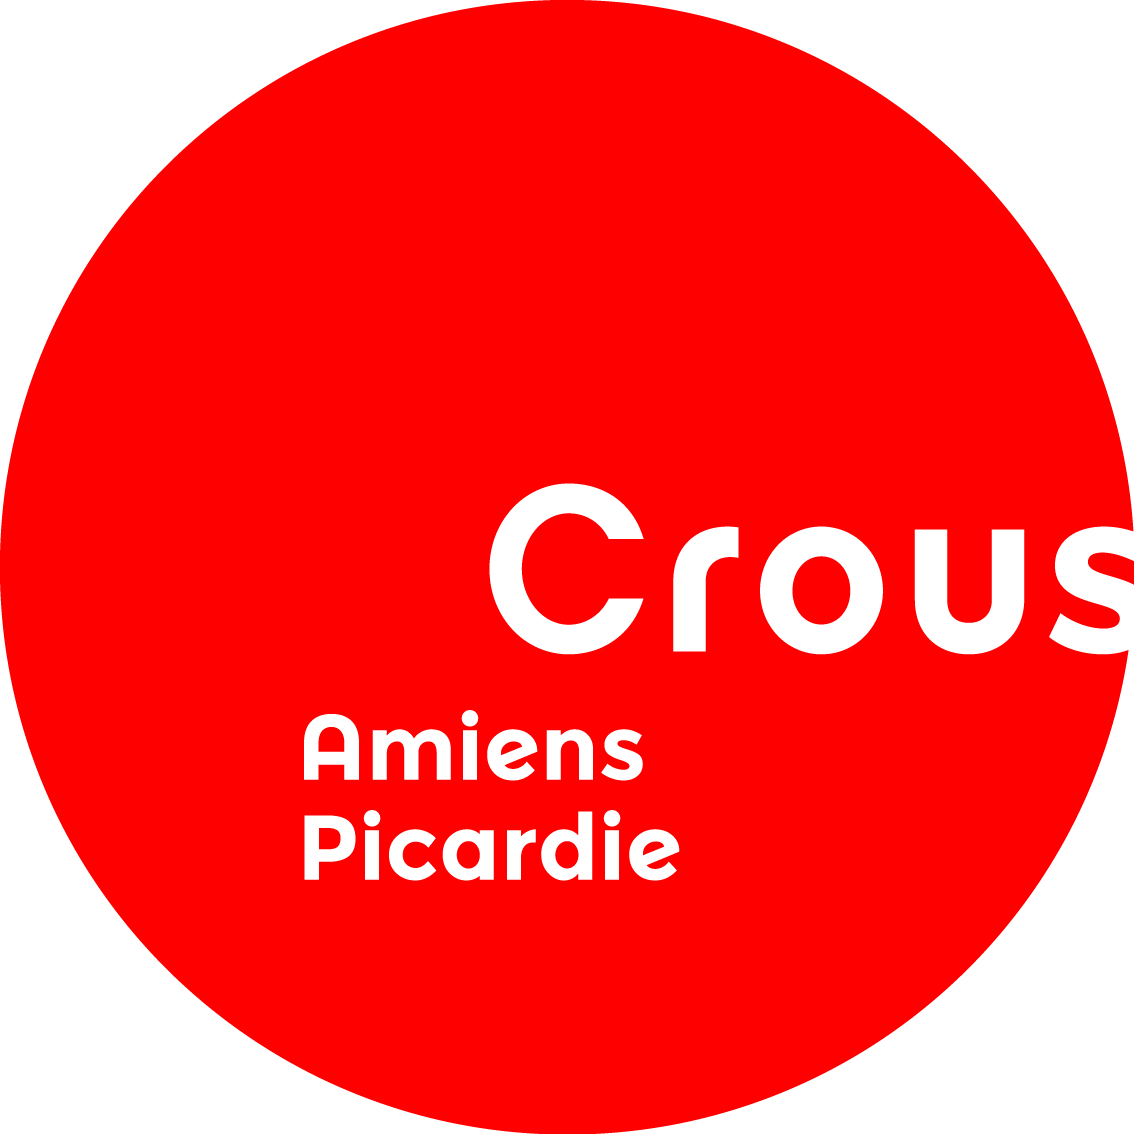 Crous-logo-amiens-picardie